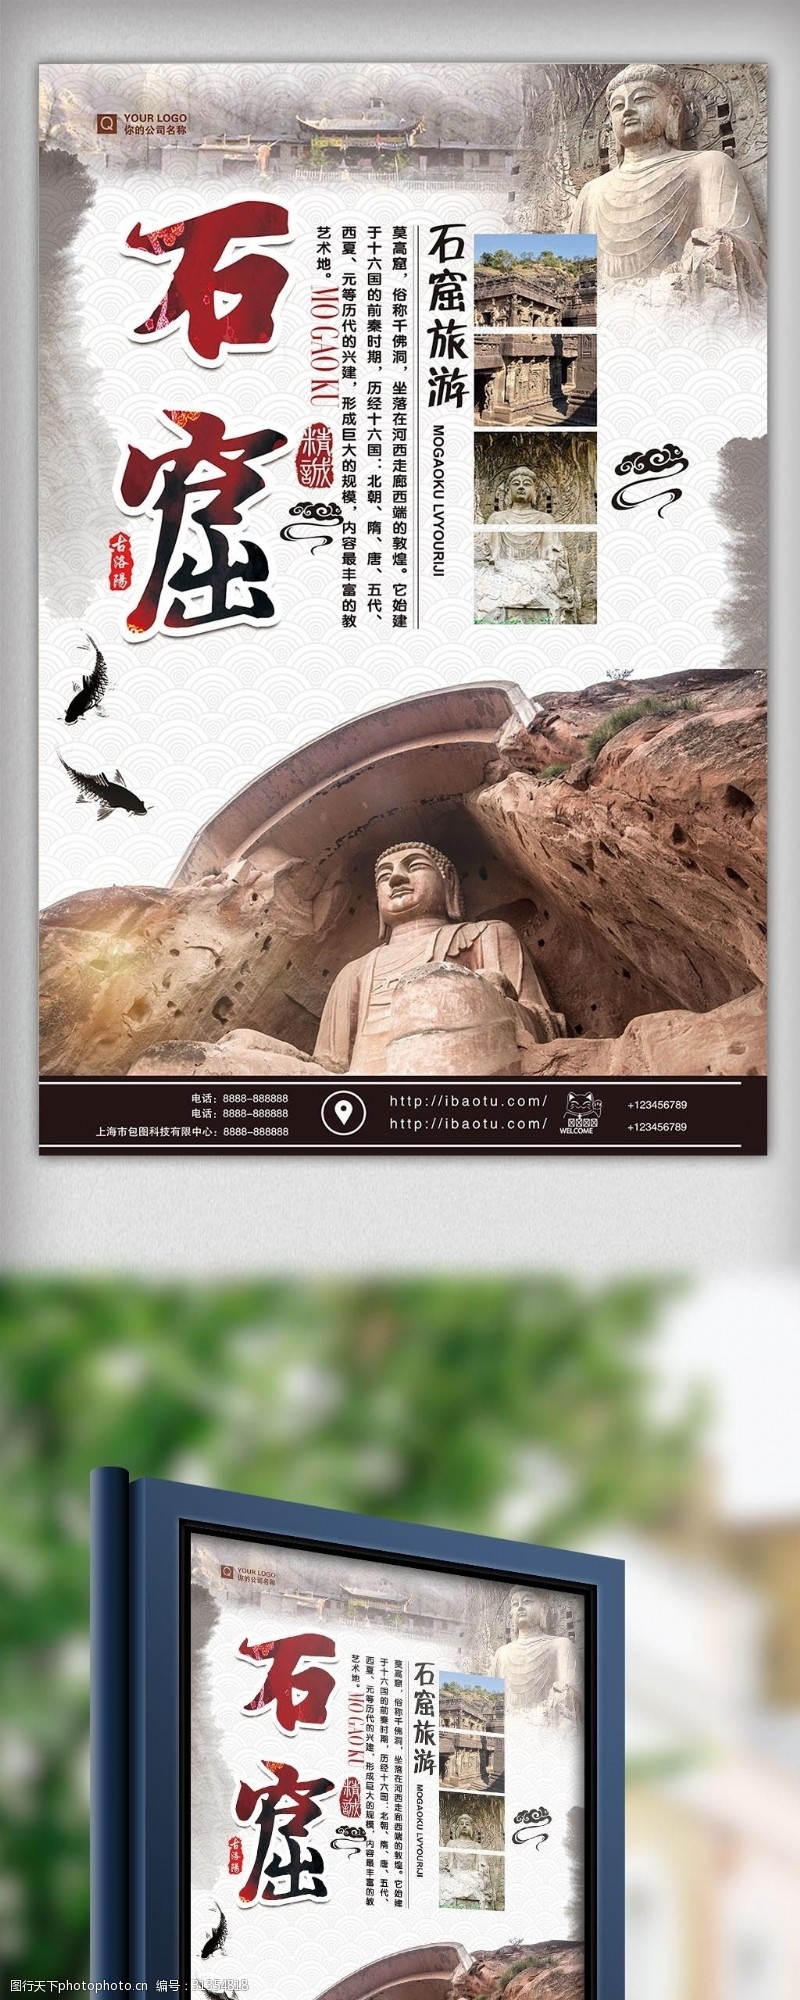 海天佛国大气古典石窟旅游海报设计